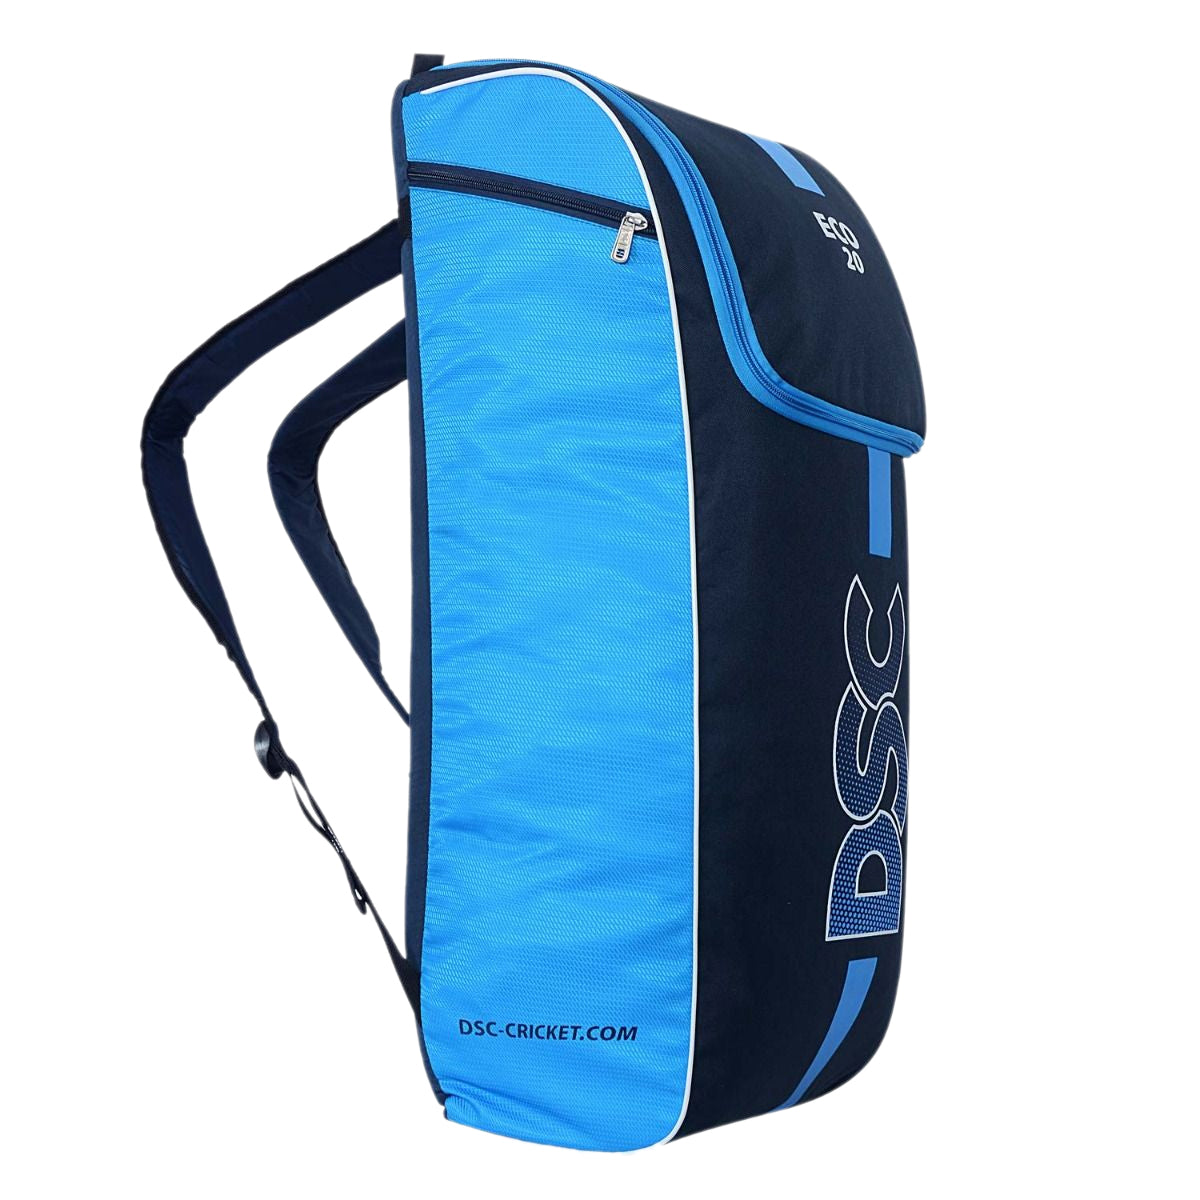 Dsc Intense Pro Shoulder Cricket Kit Bag Large With Wheels